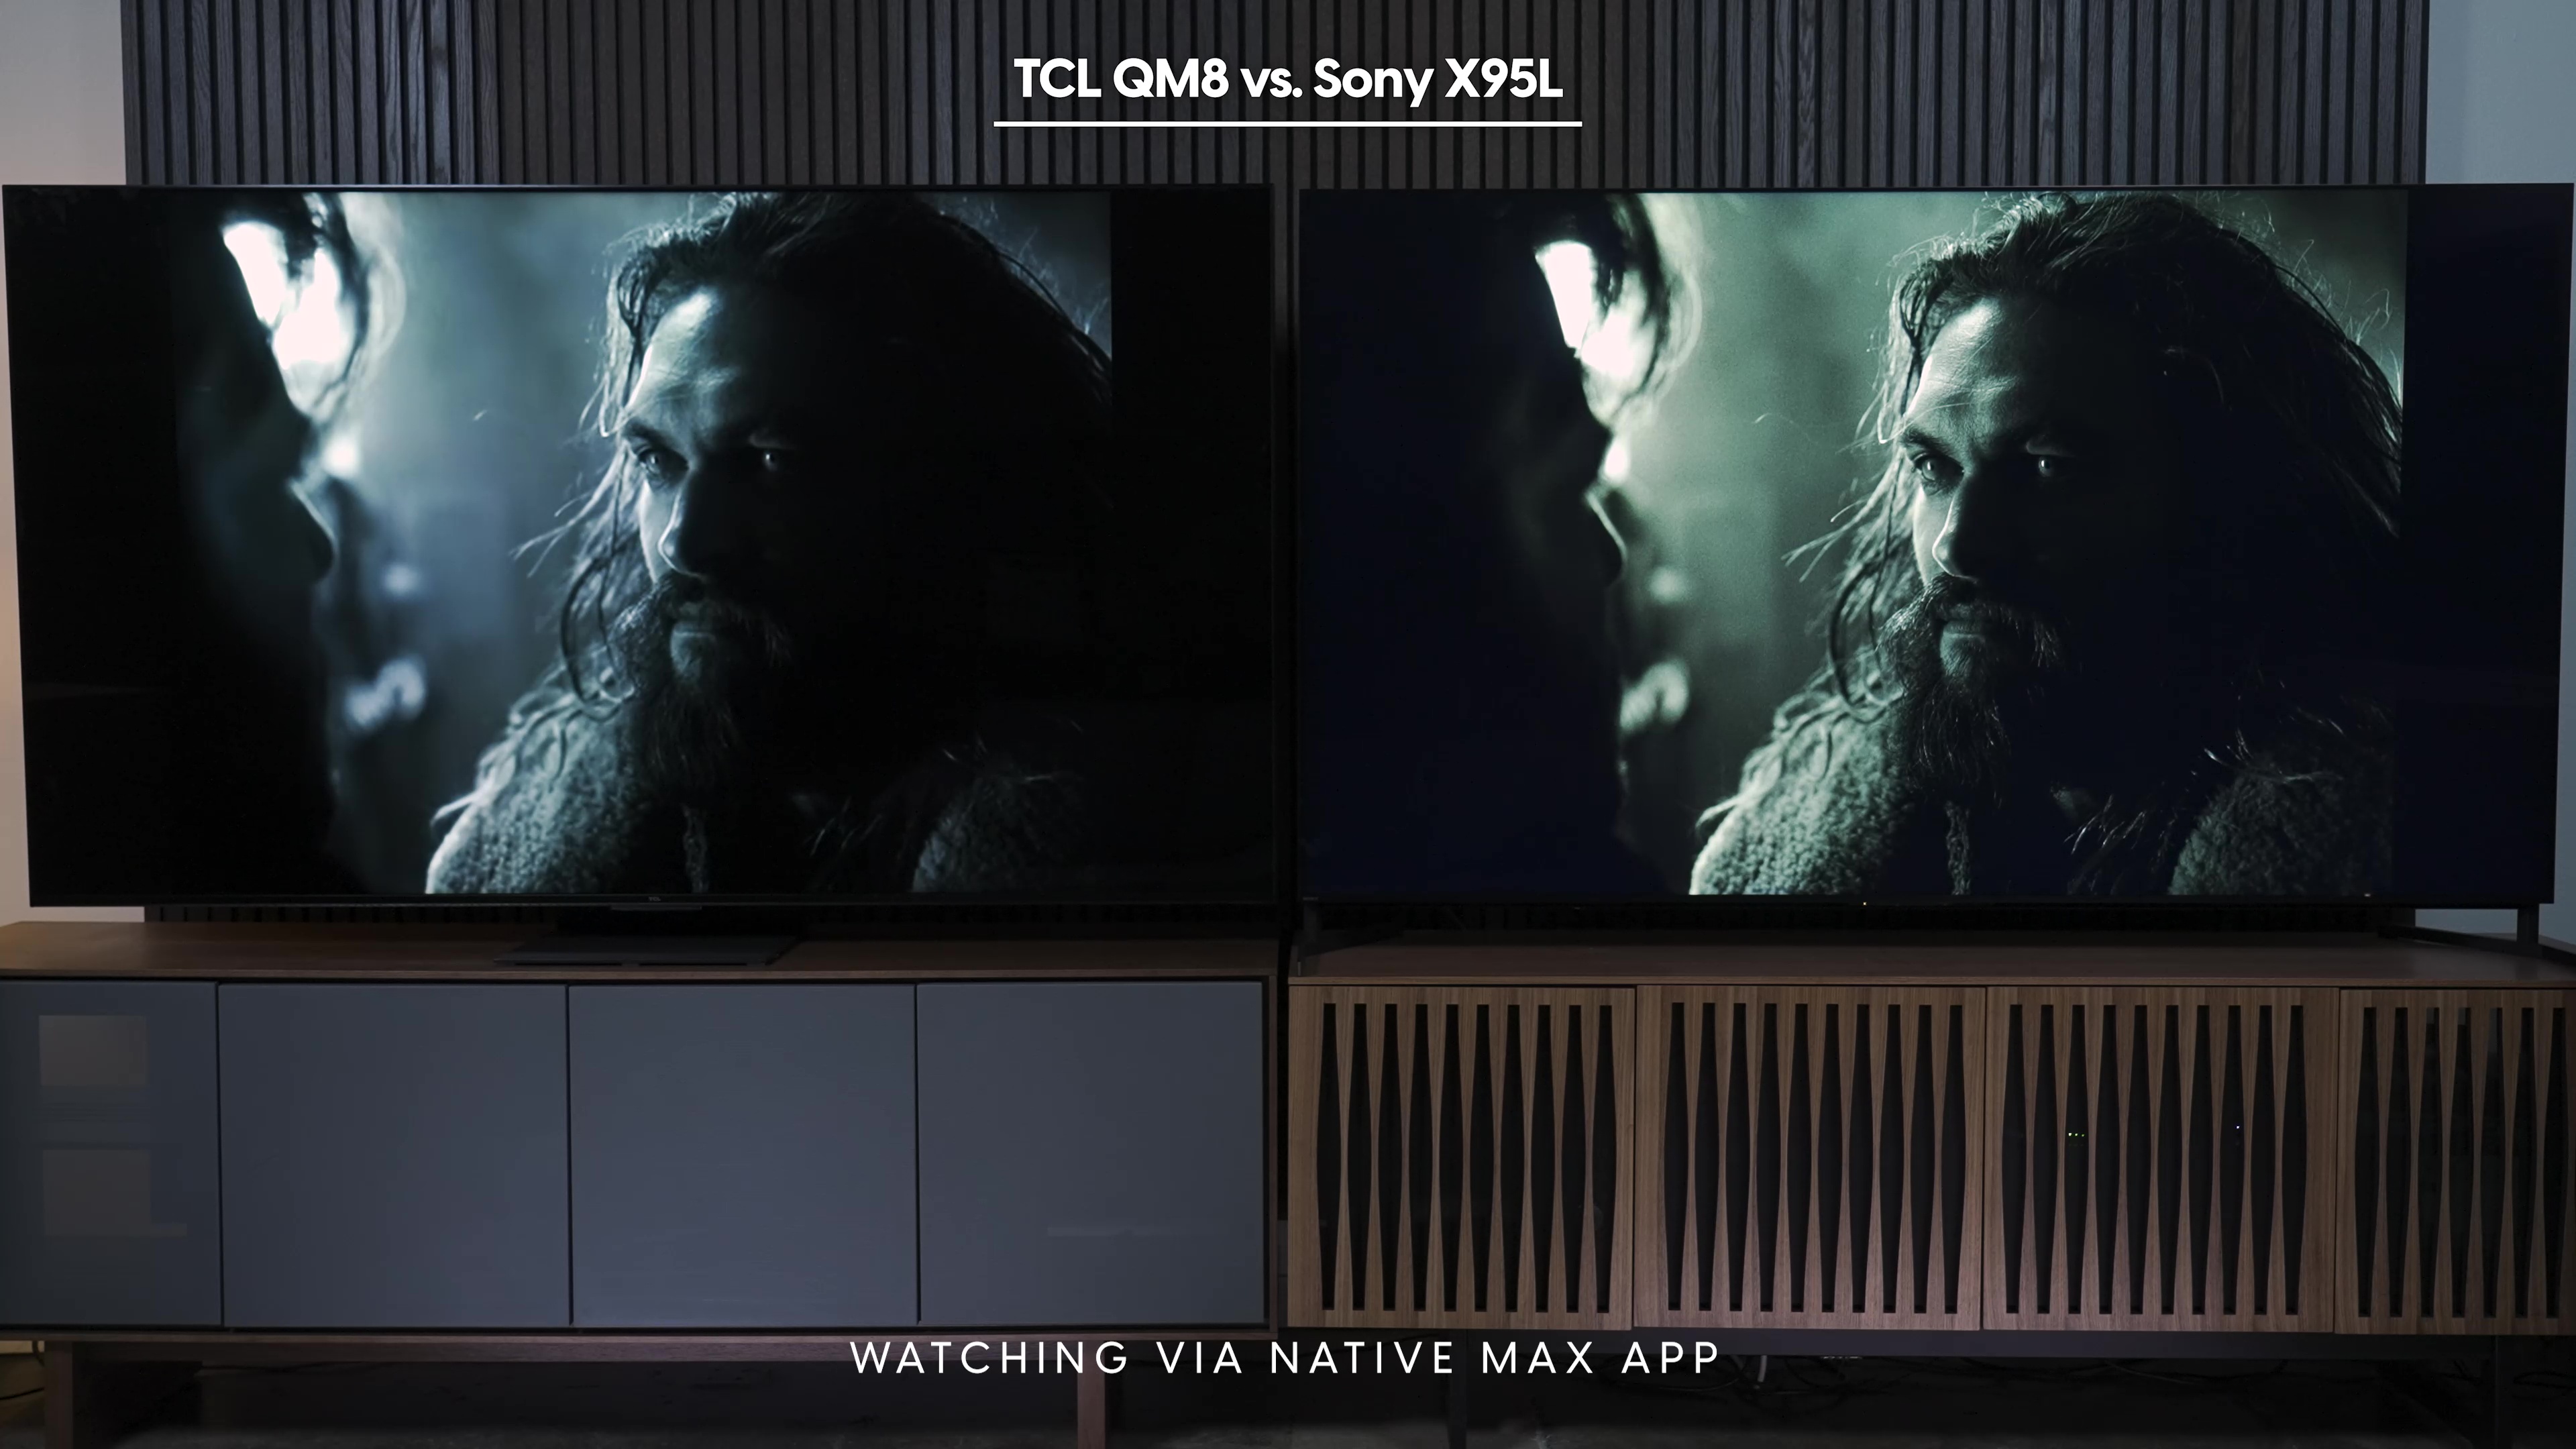 Comparação lado a lado de uma captura de tela da Liga da Justiça vista no aplicativo Max nativo no Sony Bravia X95L vs TCL QM8.